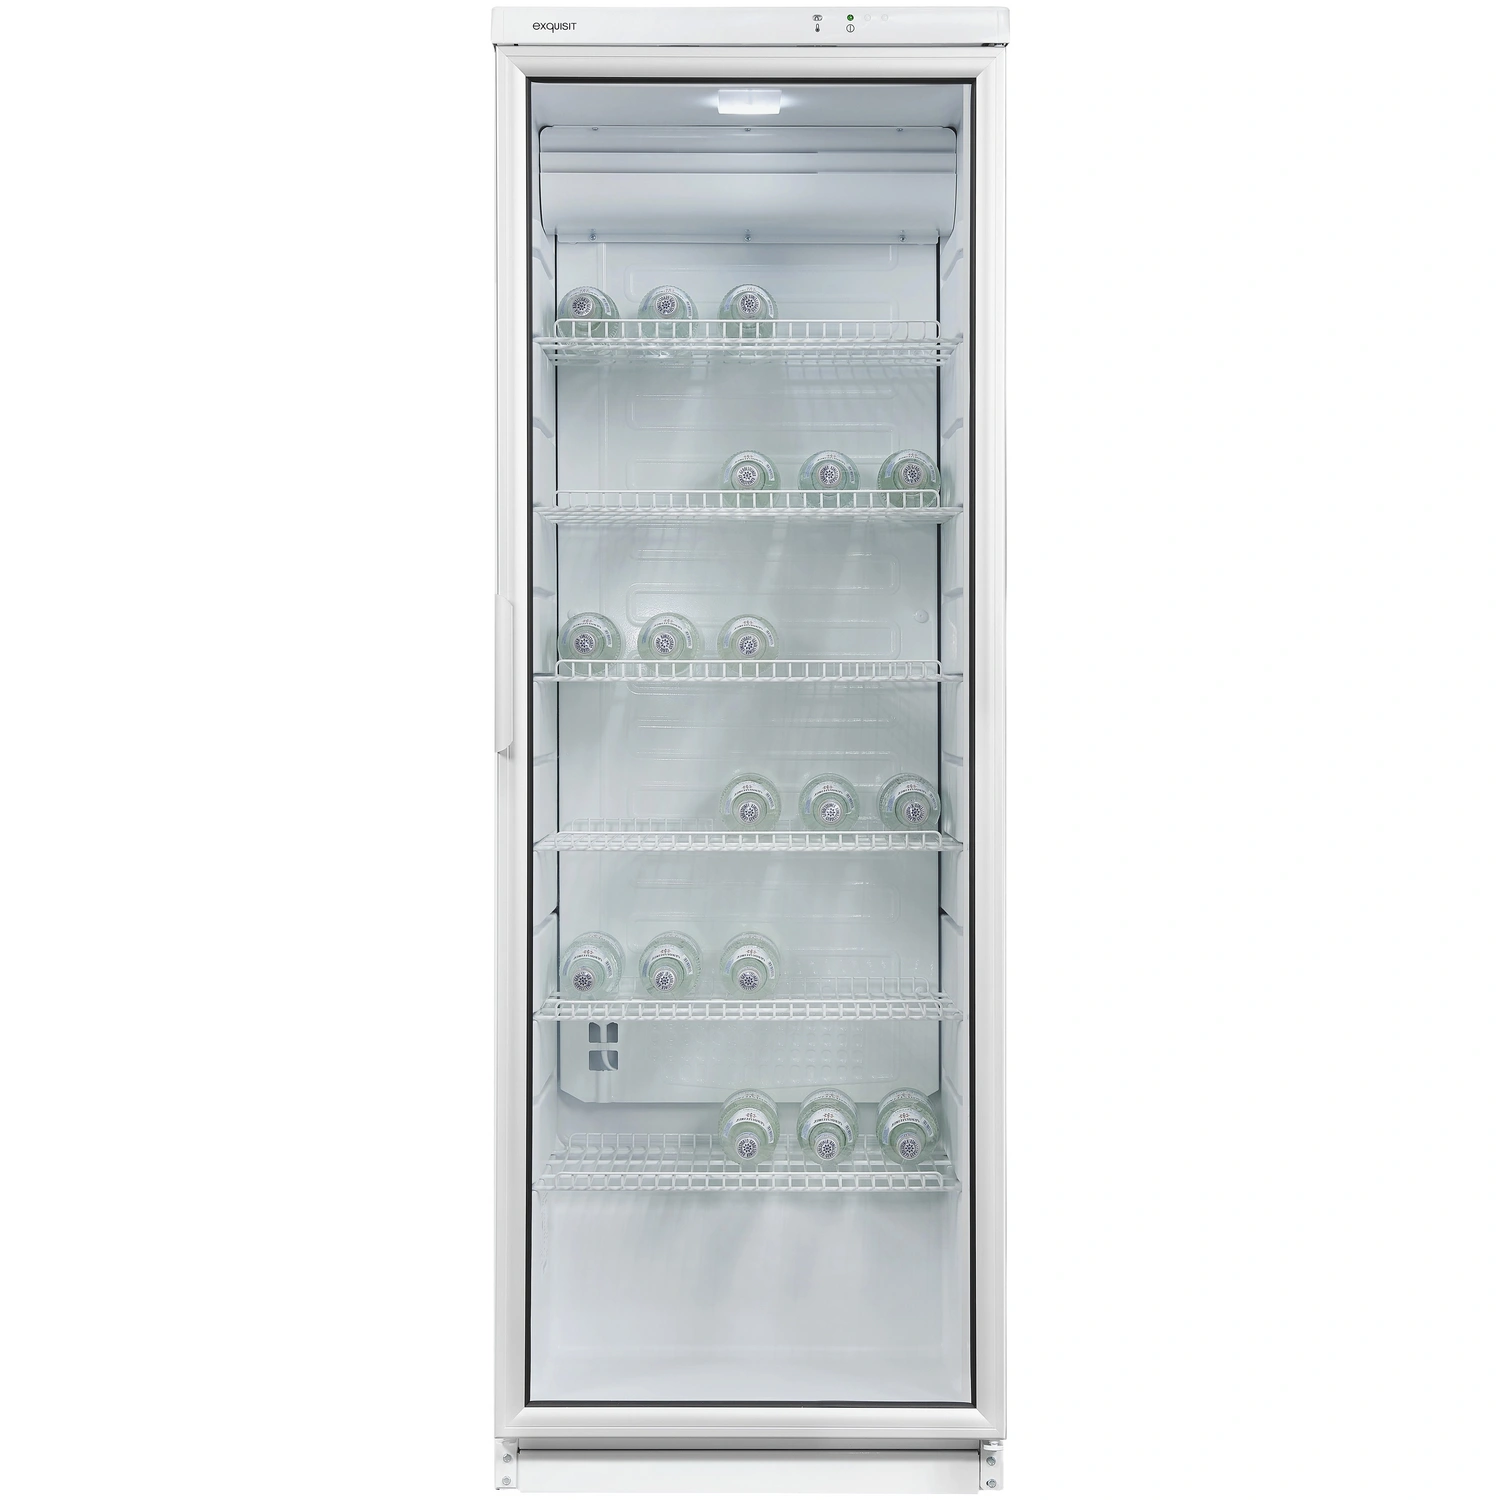 Exquisit Glastürkühlschrank, BxHxL: 60 x 173 x 60 cm, 320 l, weiß 